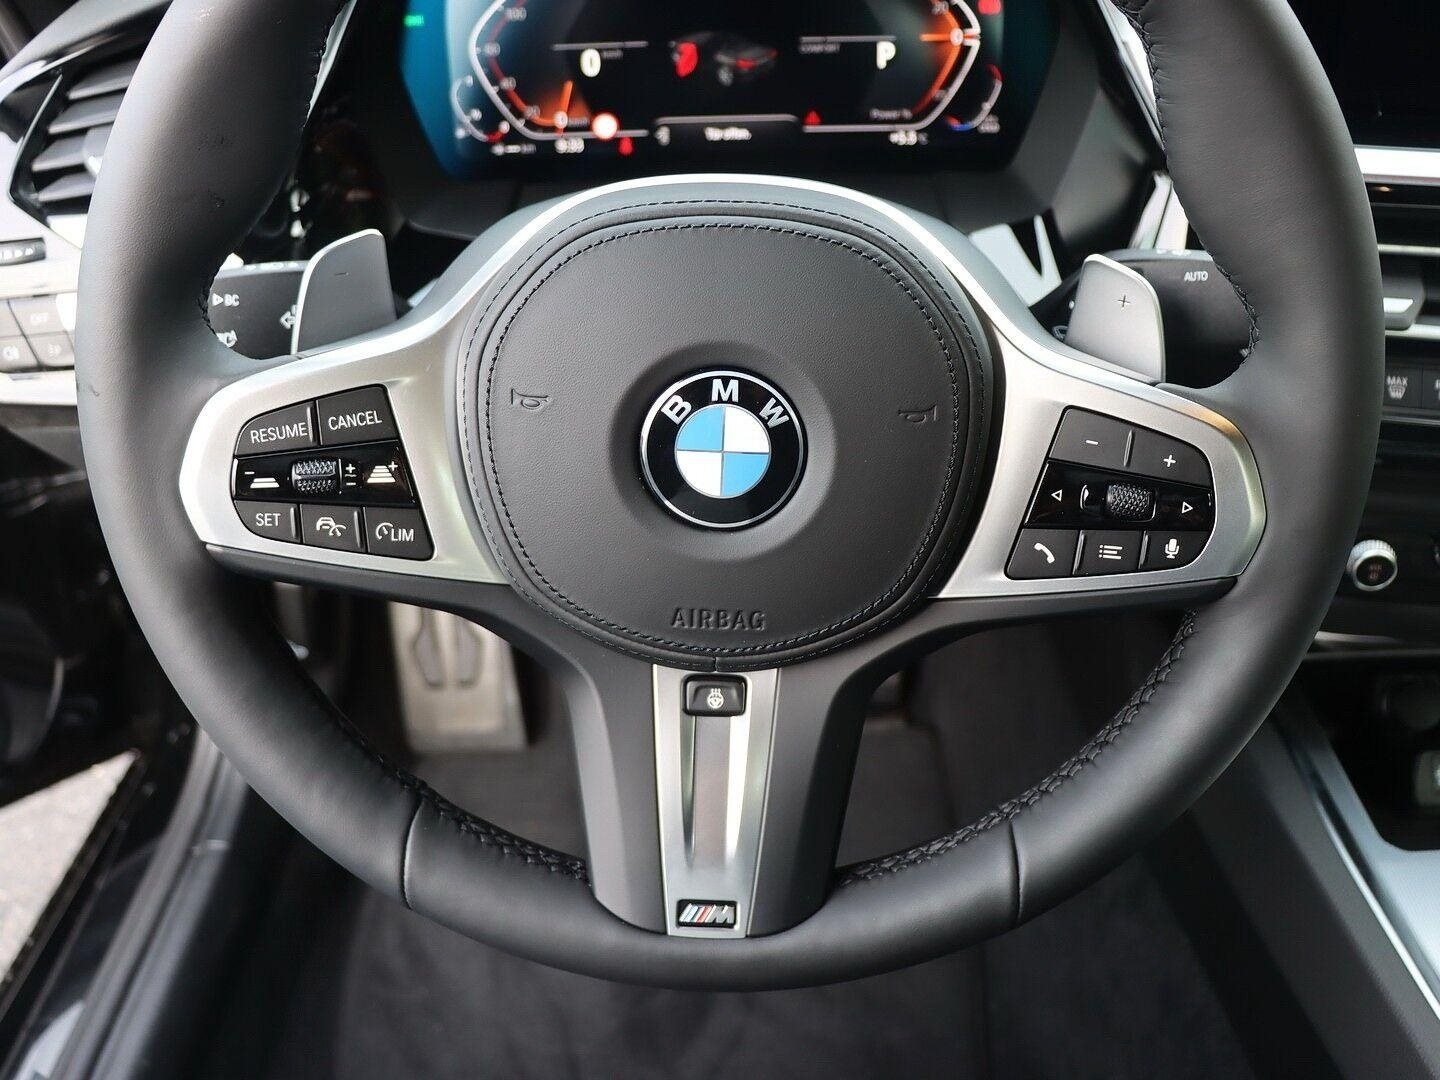 BMW Z4 sDrive20i 